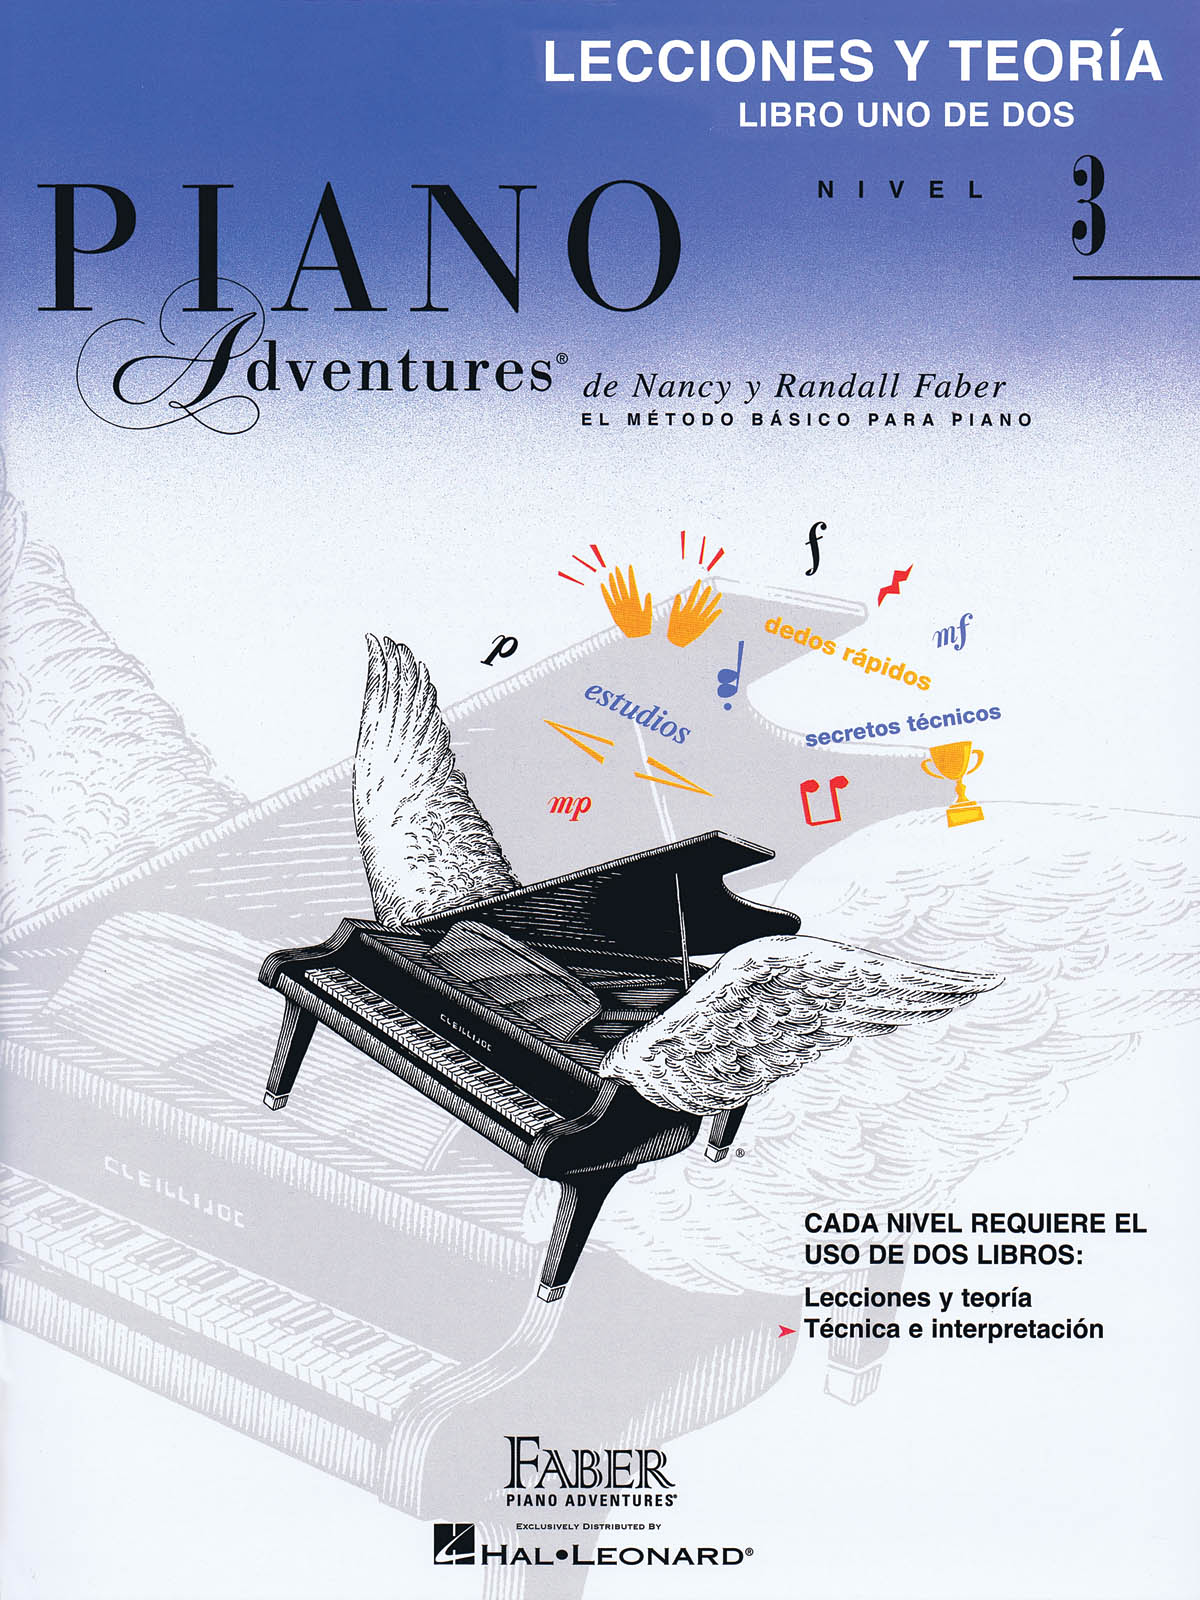 Faber Piano Adventures: Lecciones y Teoría 3  - Libro Uno de Dos Nivel 3